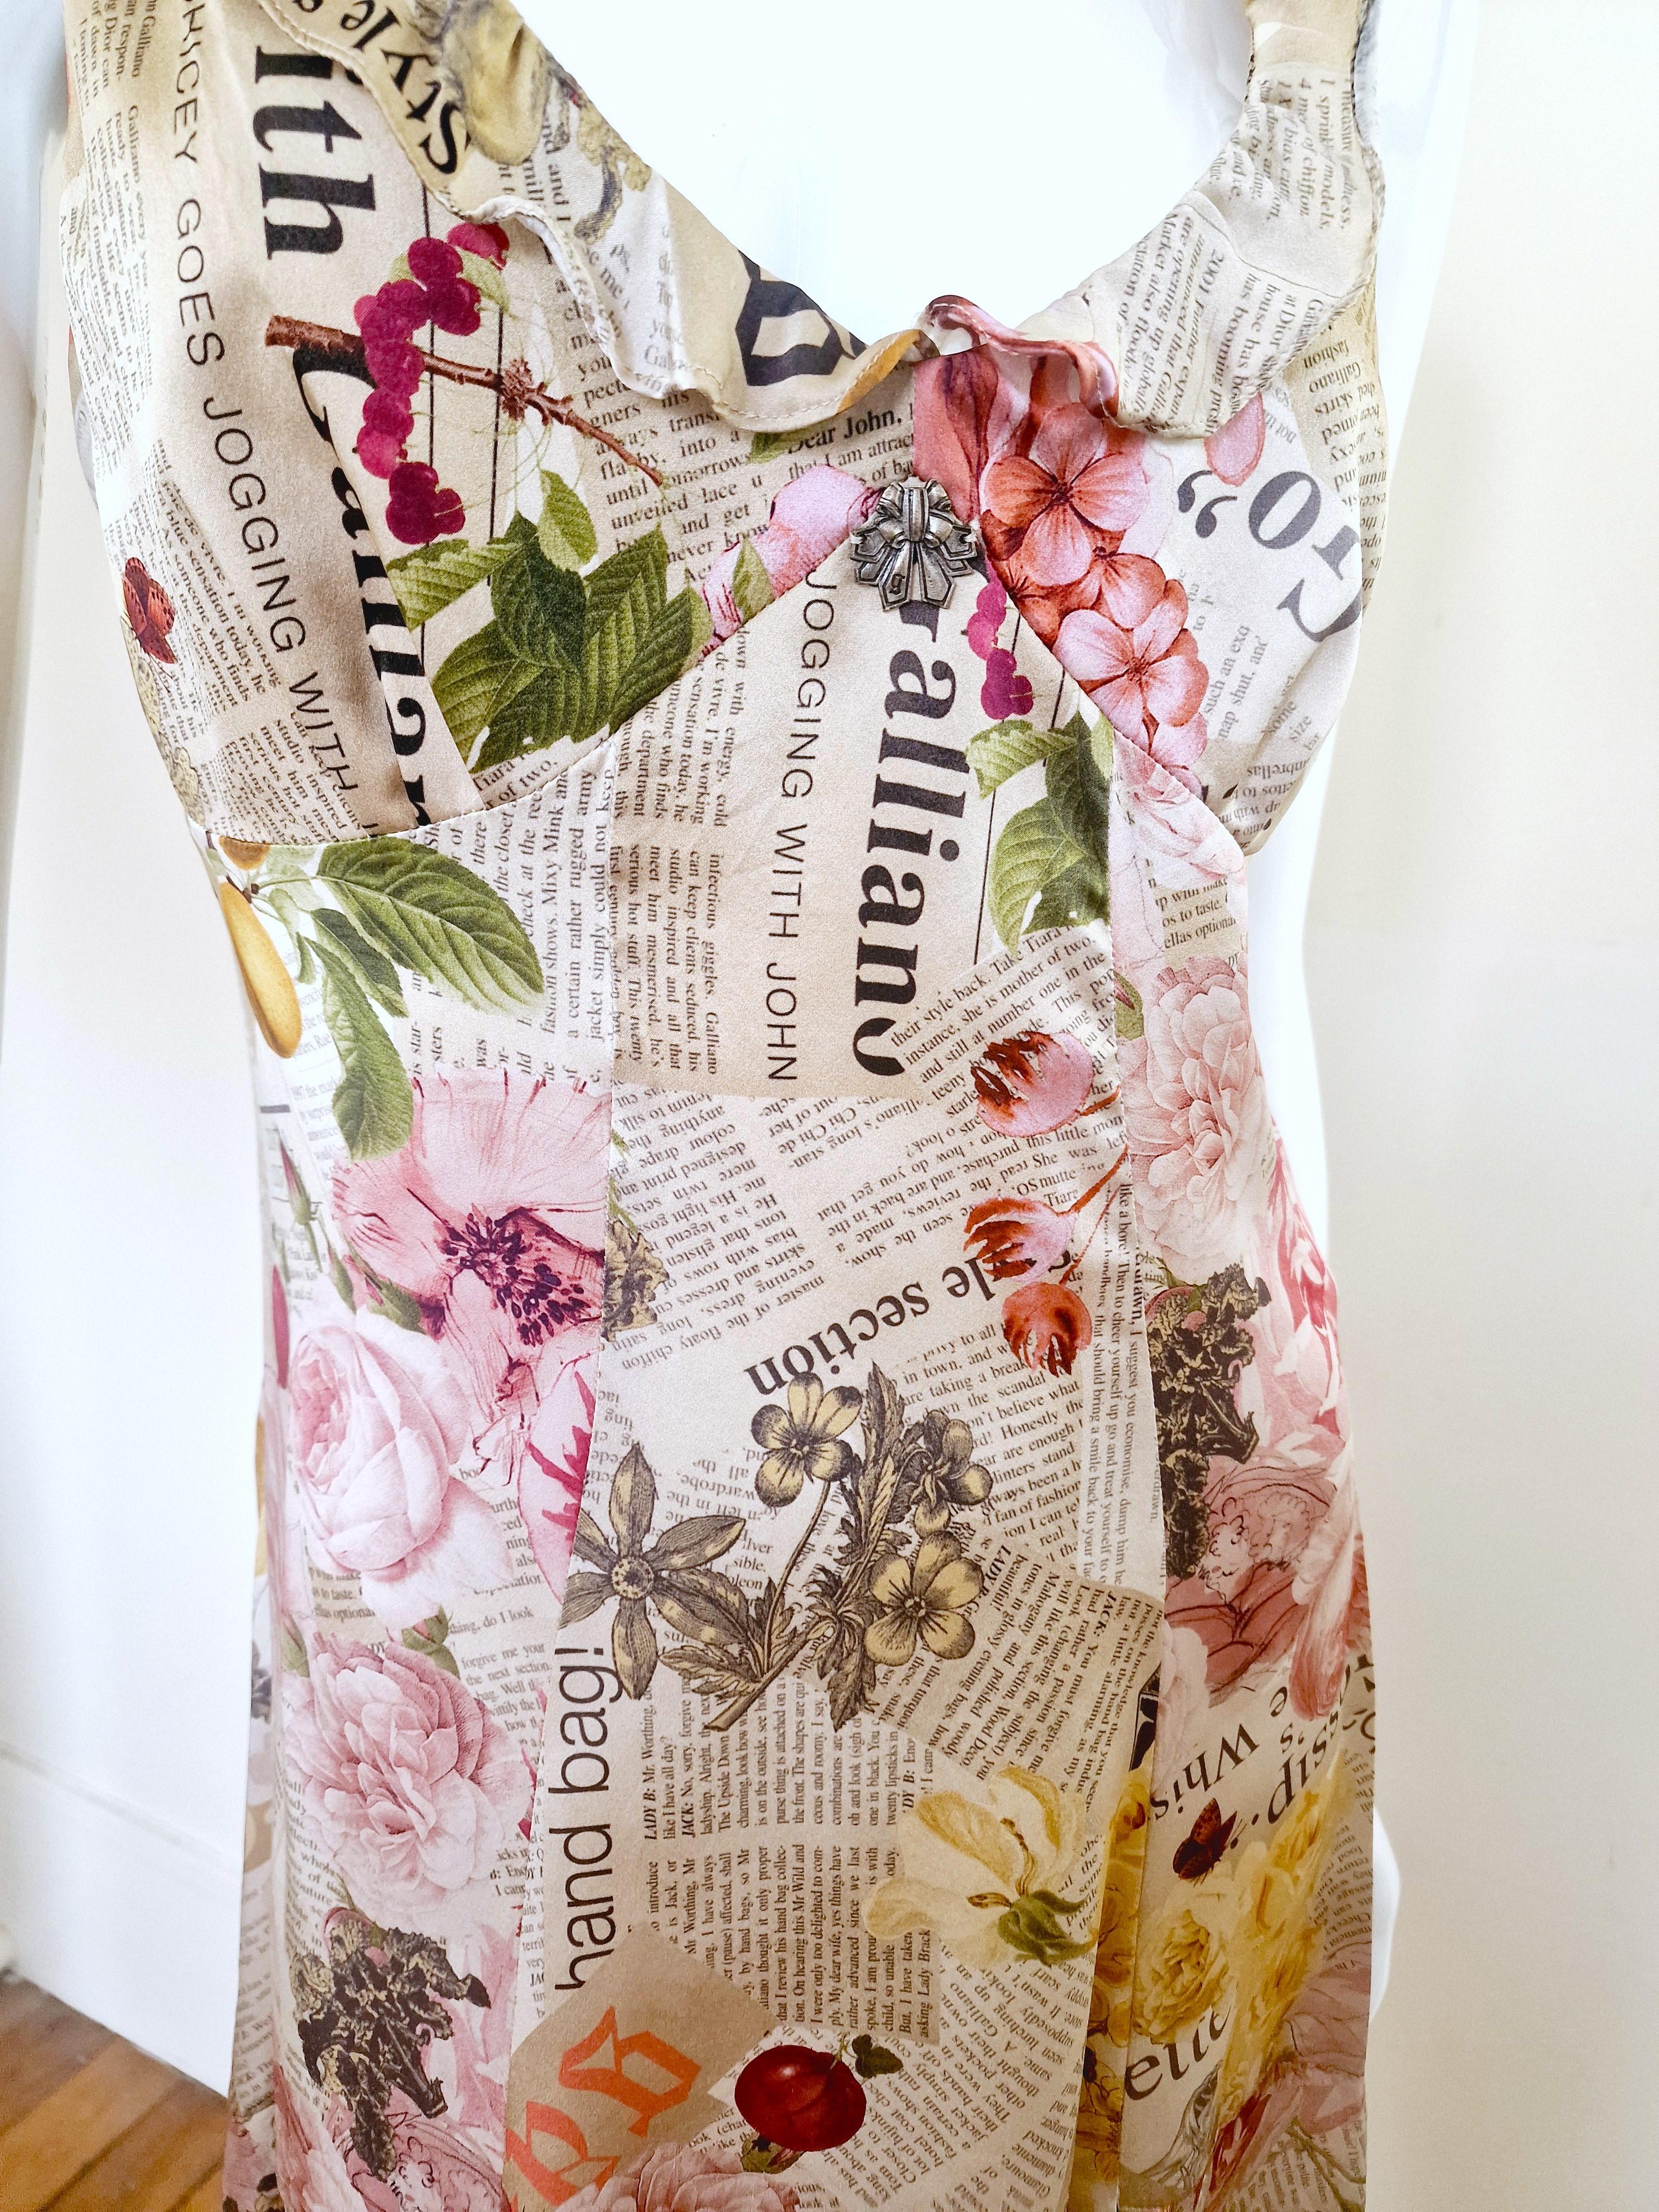 John Galliano Gazette Newspaper Silk News Floral Butterfly Face Evening Dress 1